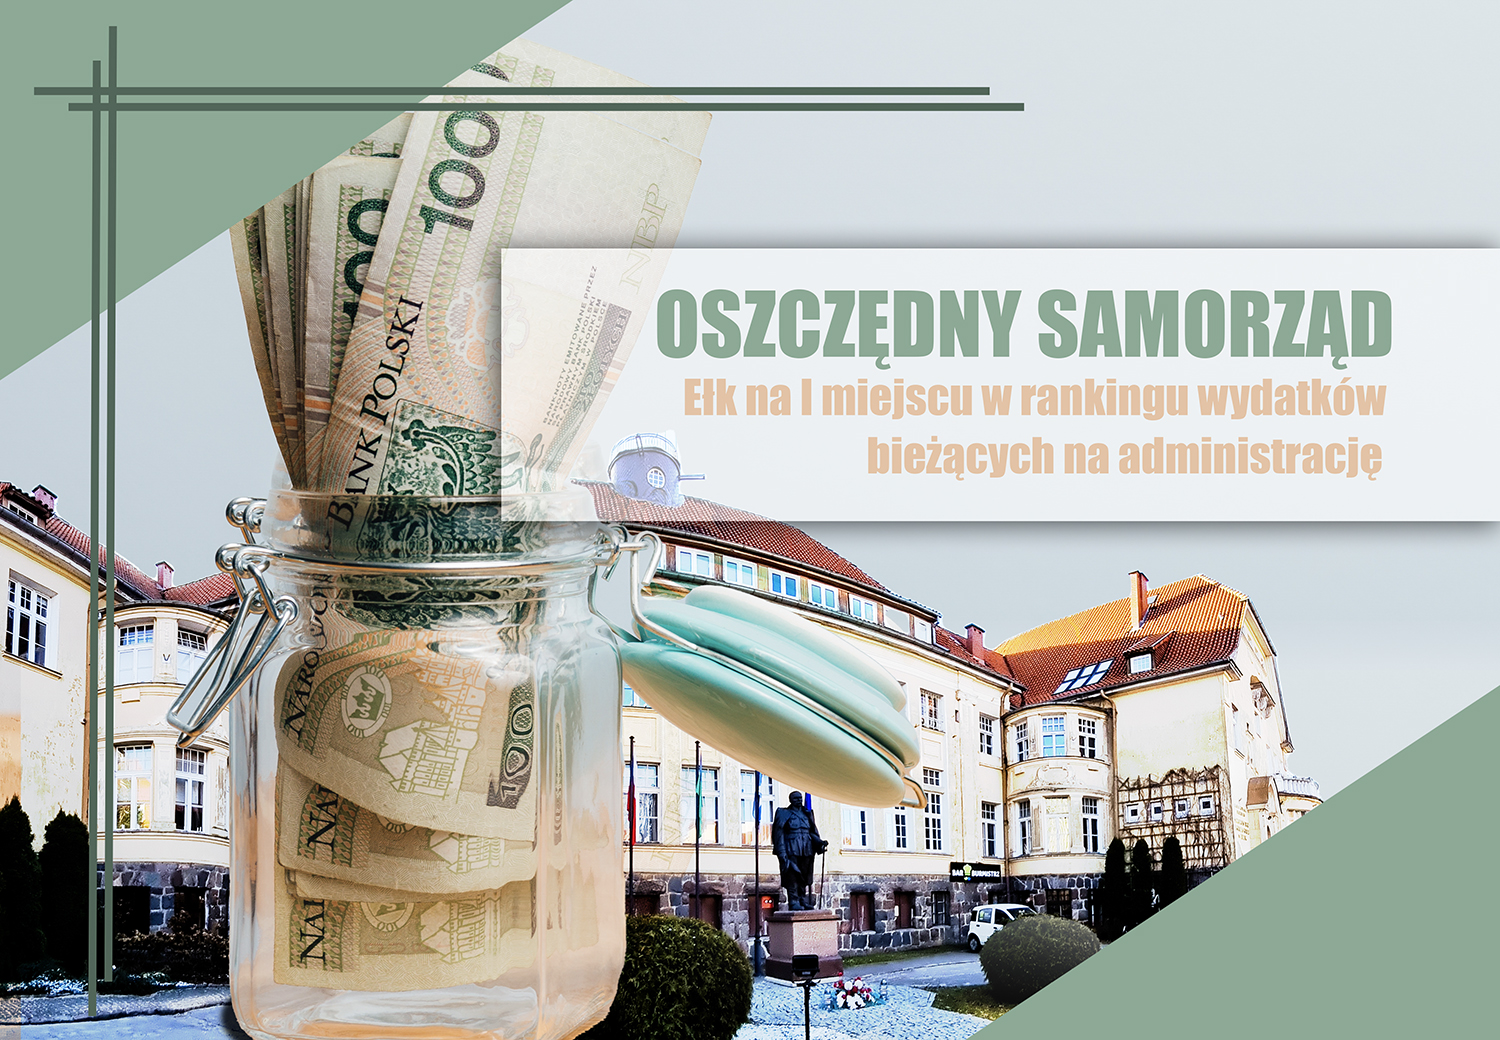 Экономичное местное самоуправление – Ełk на первом месте в рейтинге текущих расходов на администрирование